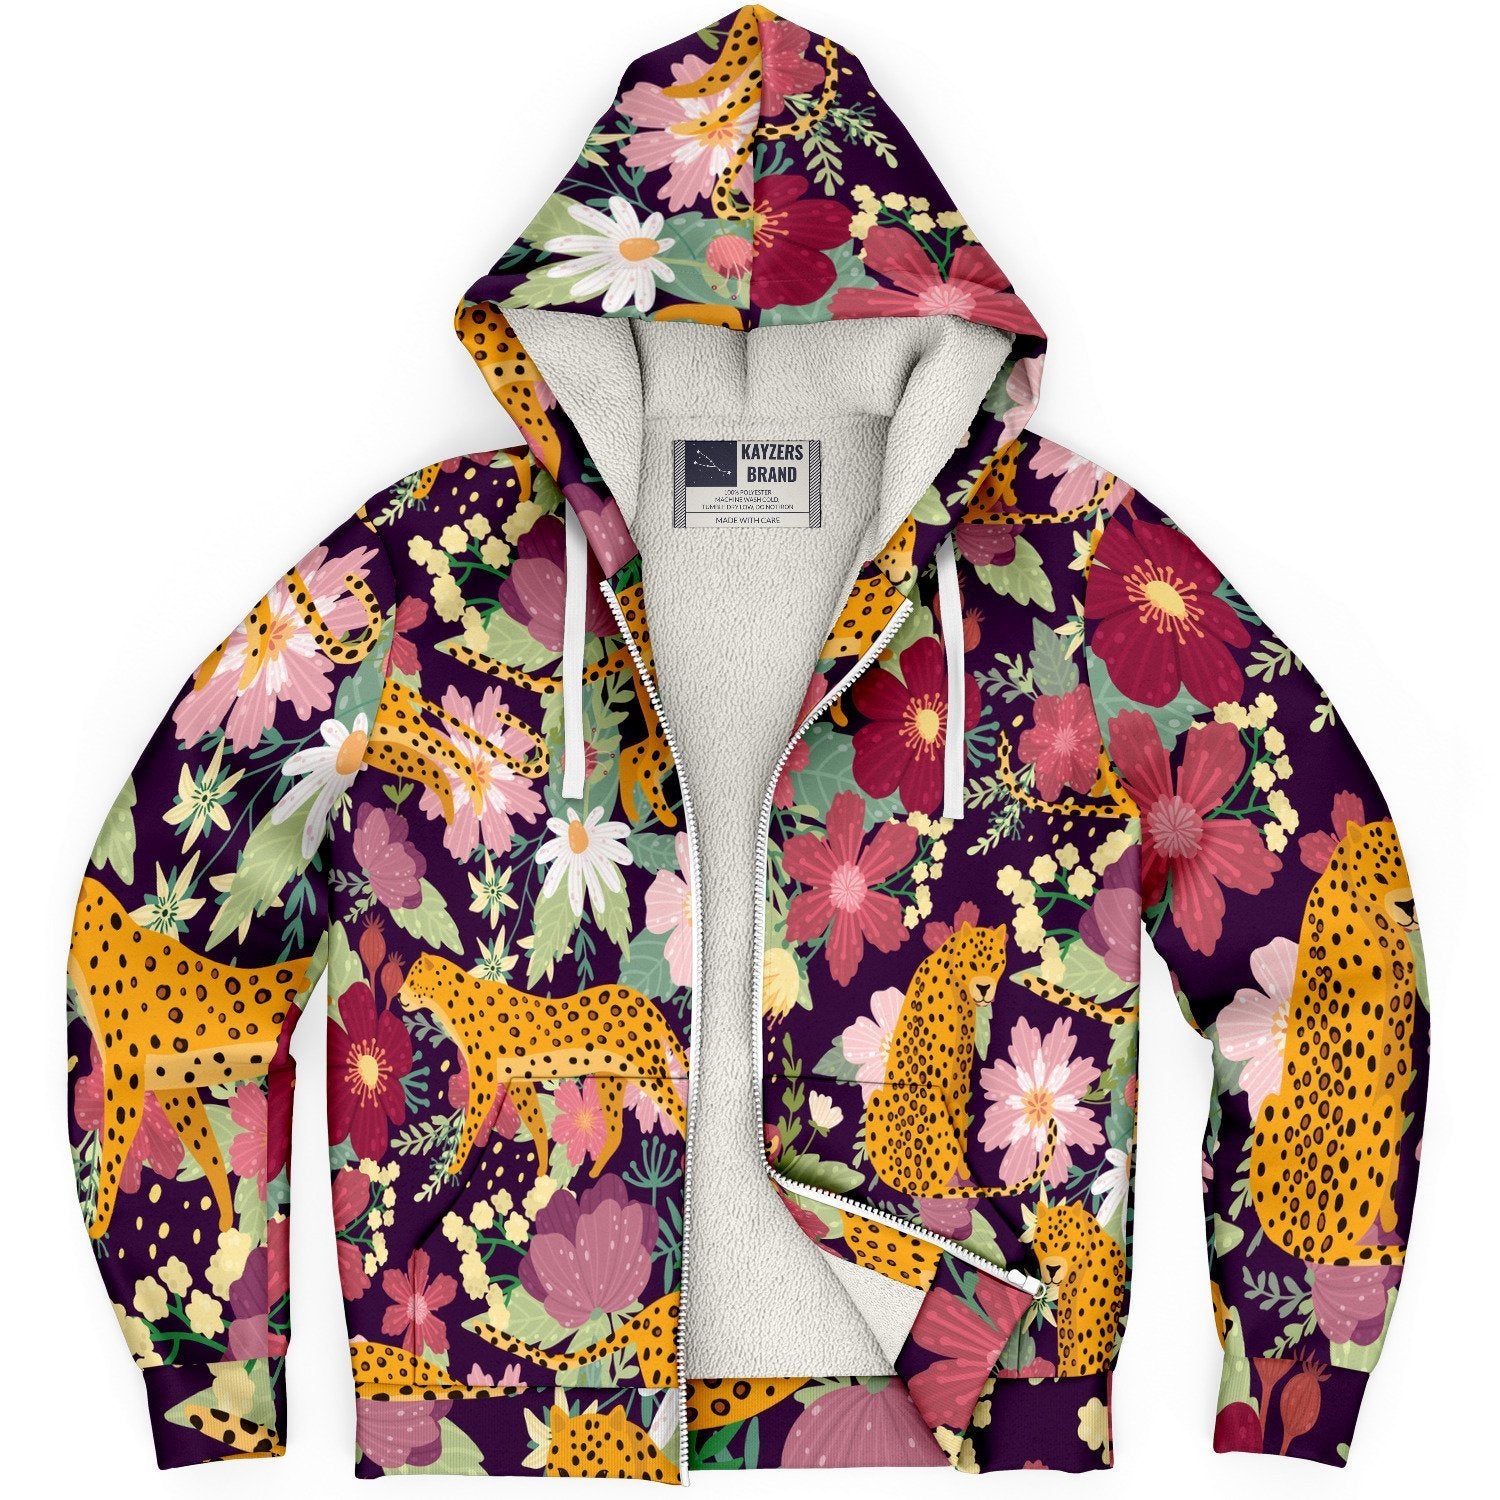 CDLP Mobilité cotton hoodie  River Island garden floral print